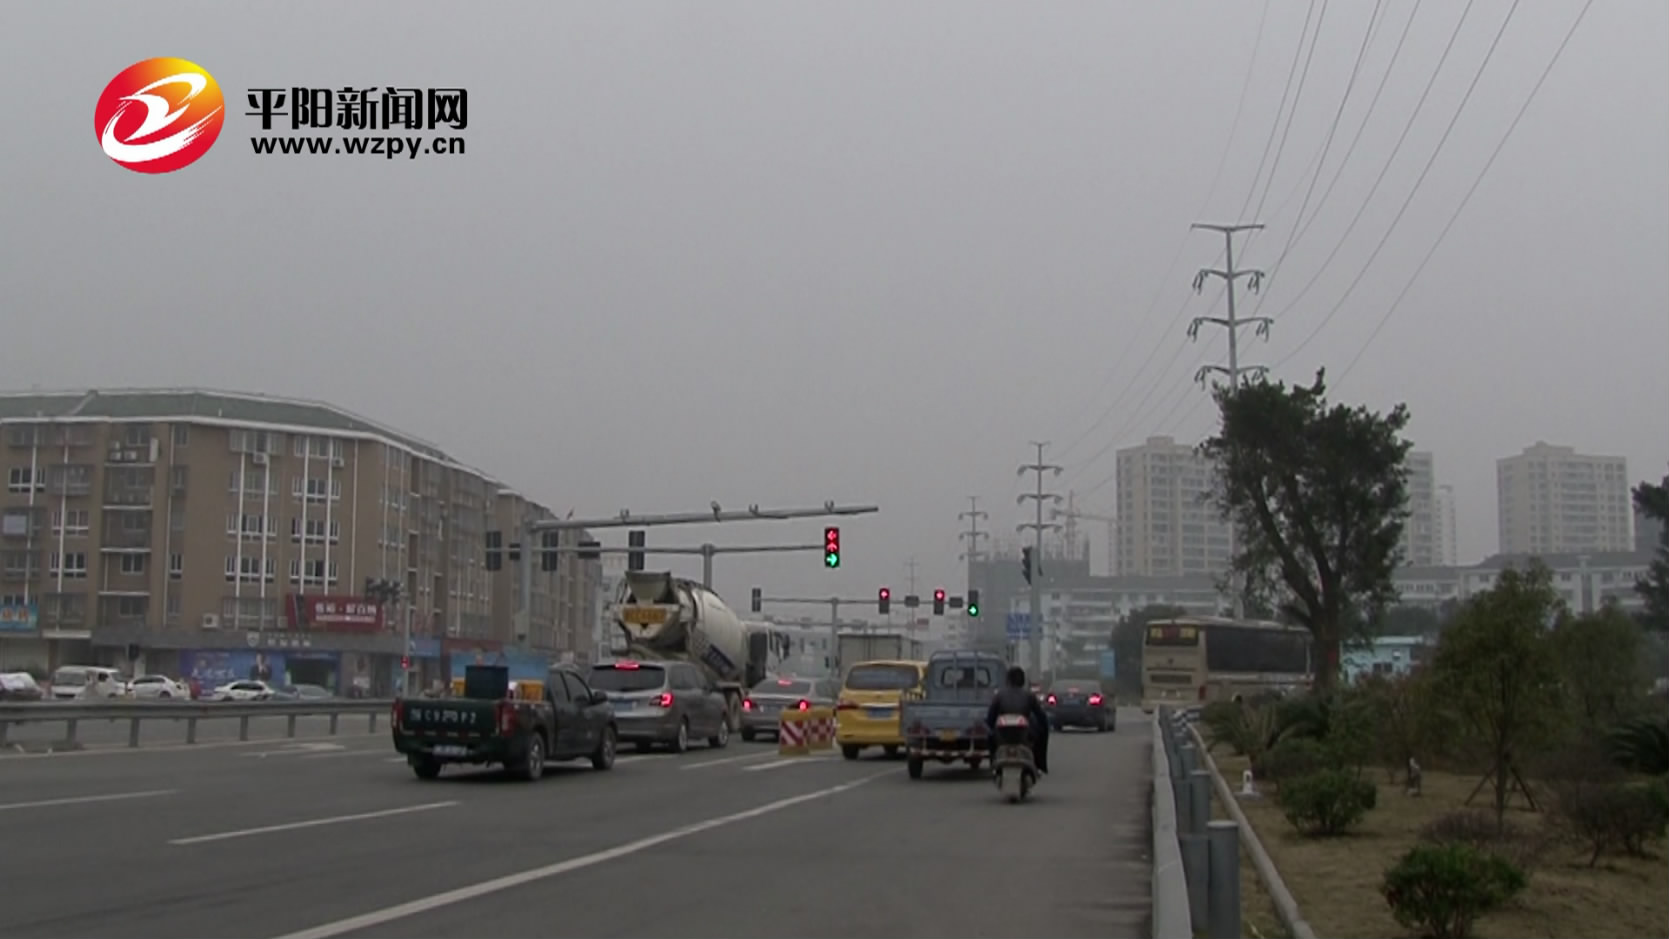 新九凰山隧道口至郭庄村路段信号灯设置被质疑